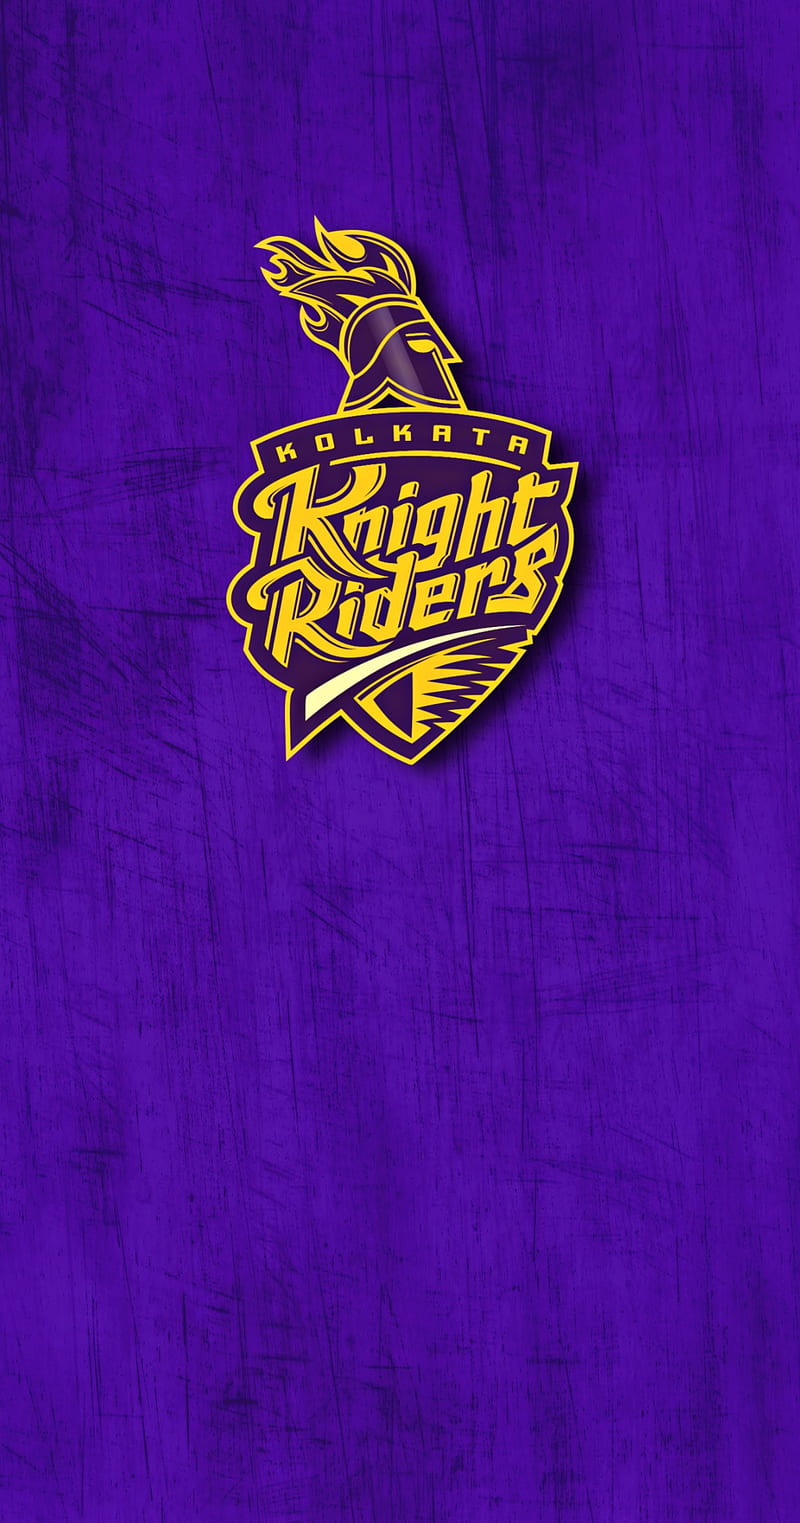 Kolkata knight riders team logo HD wallpapers | Pxfuel